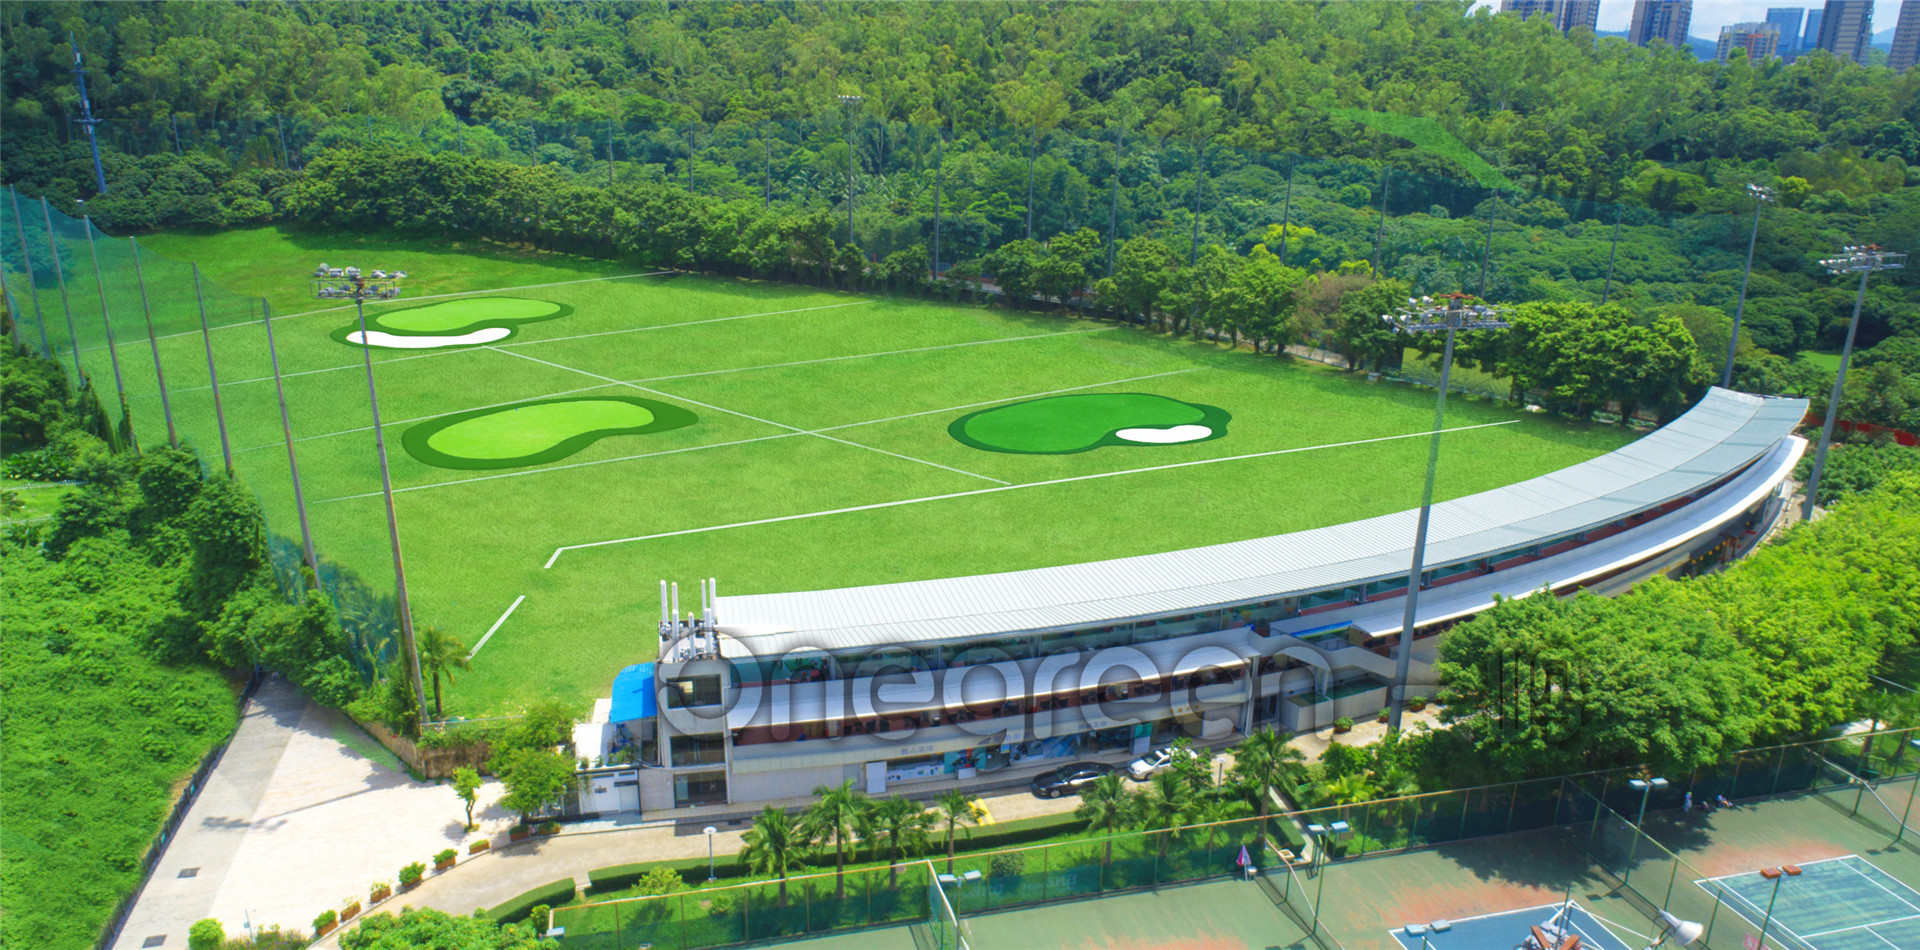 深圳云海谷高尔夫-公众场 | 百高（BaiGolf） - 高尔夫球场预订,高尔夫旅游,日本高尔夫,泰国高尔夫,越南高尔夫,中国,韩国,亚洲及太平洋高尔夫